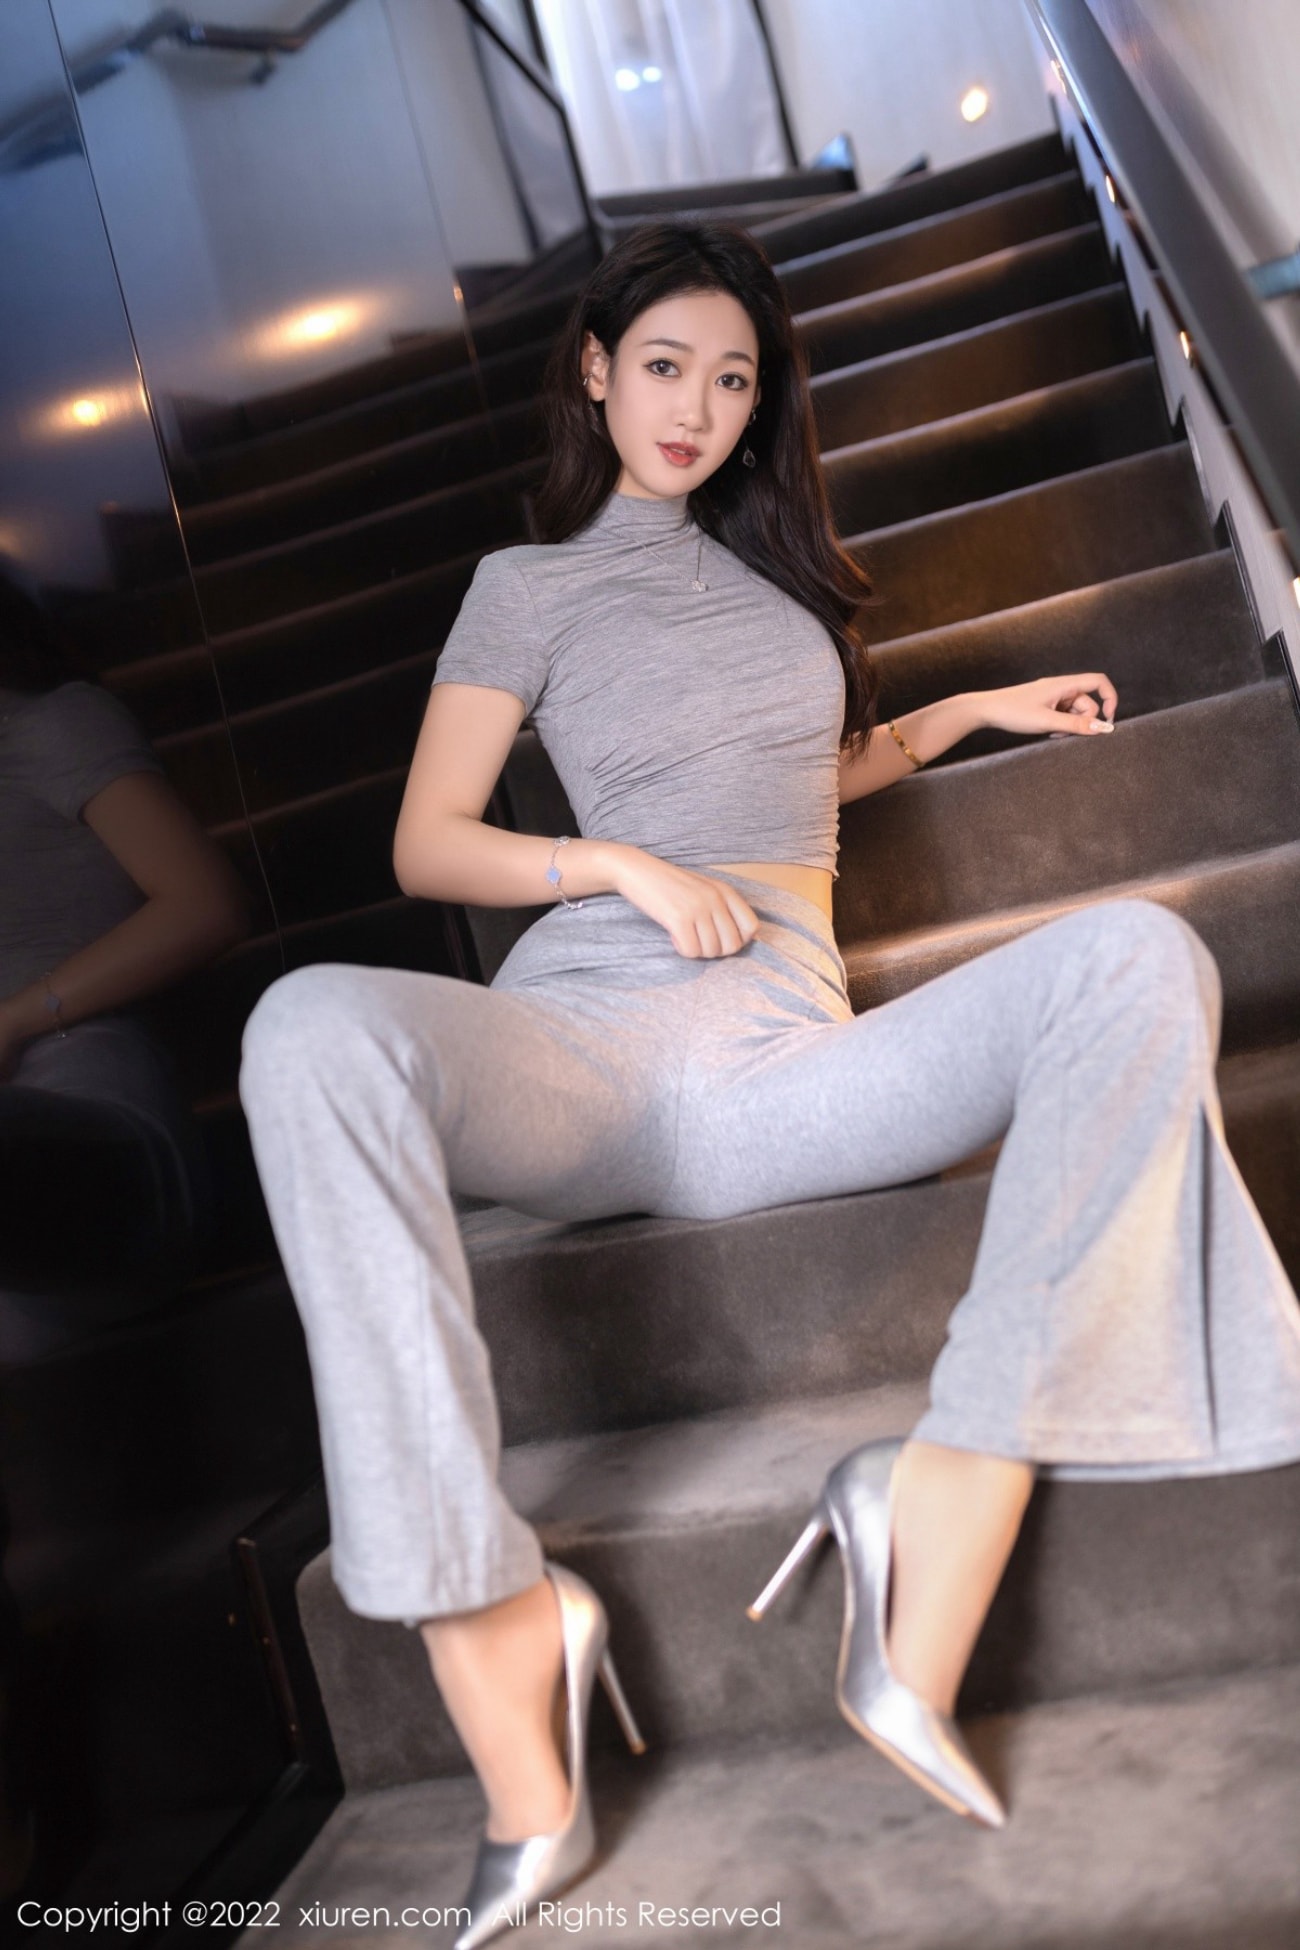 美女模特唐安琪灰色收身上衣搭配长裤北京旅拍